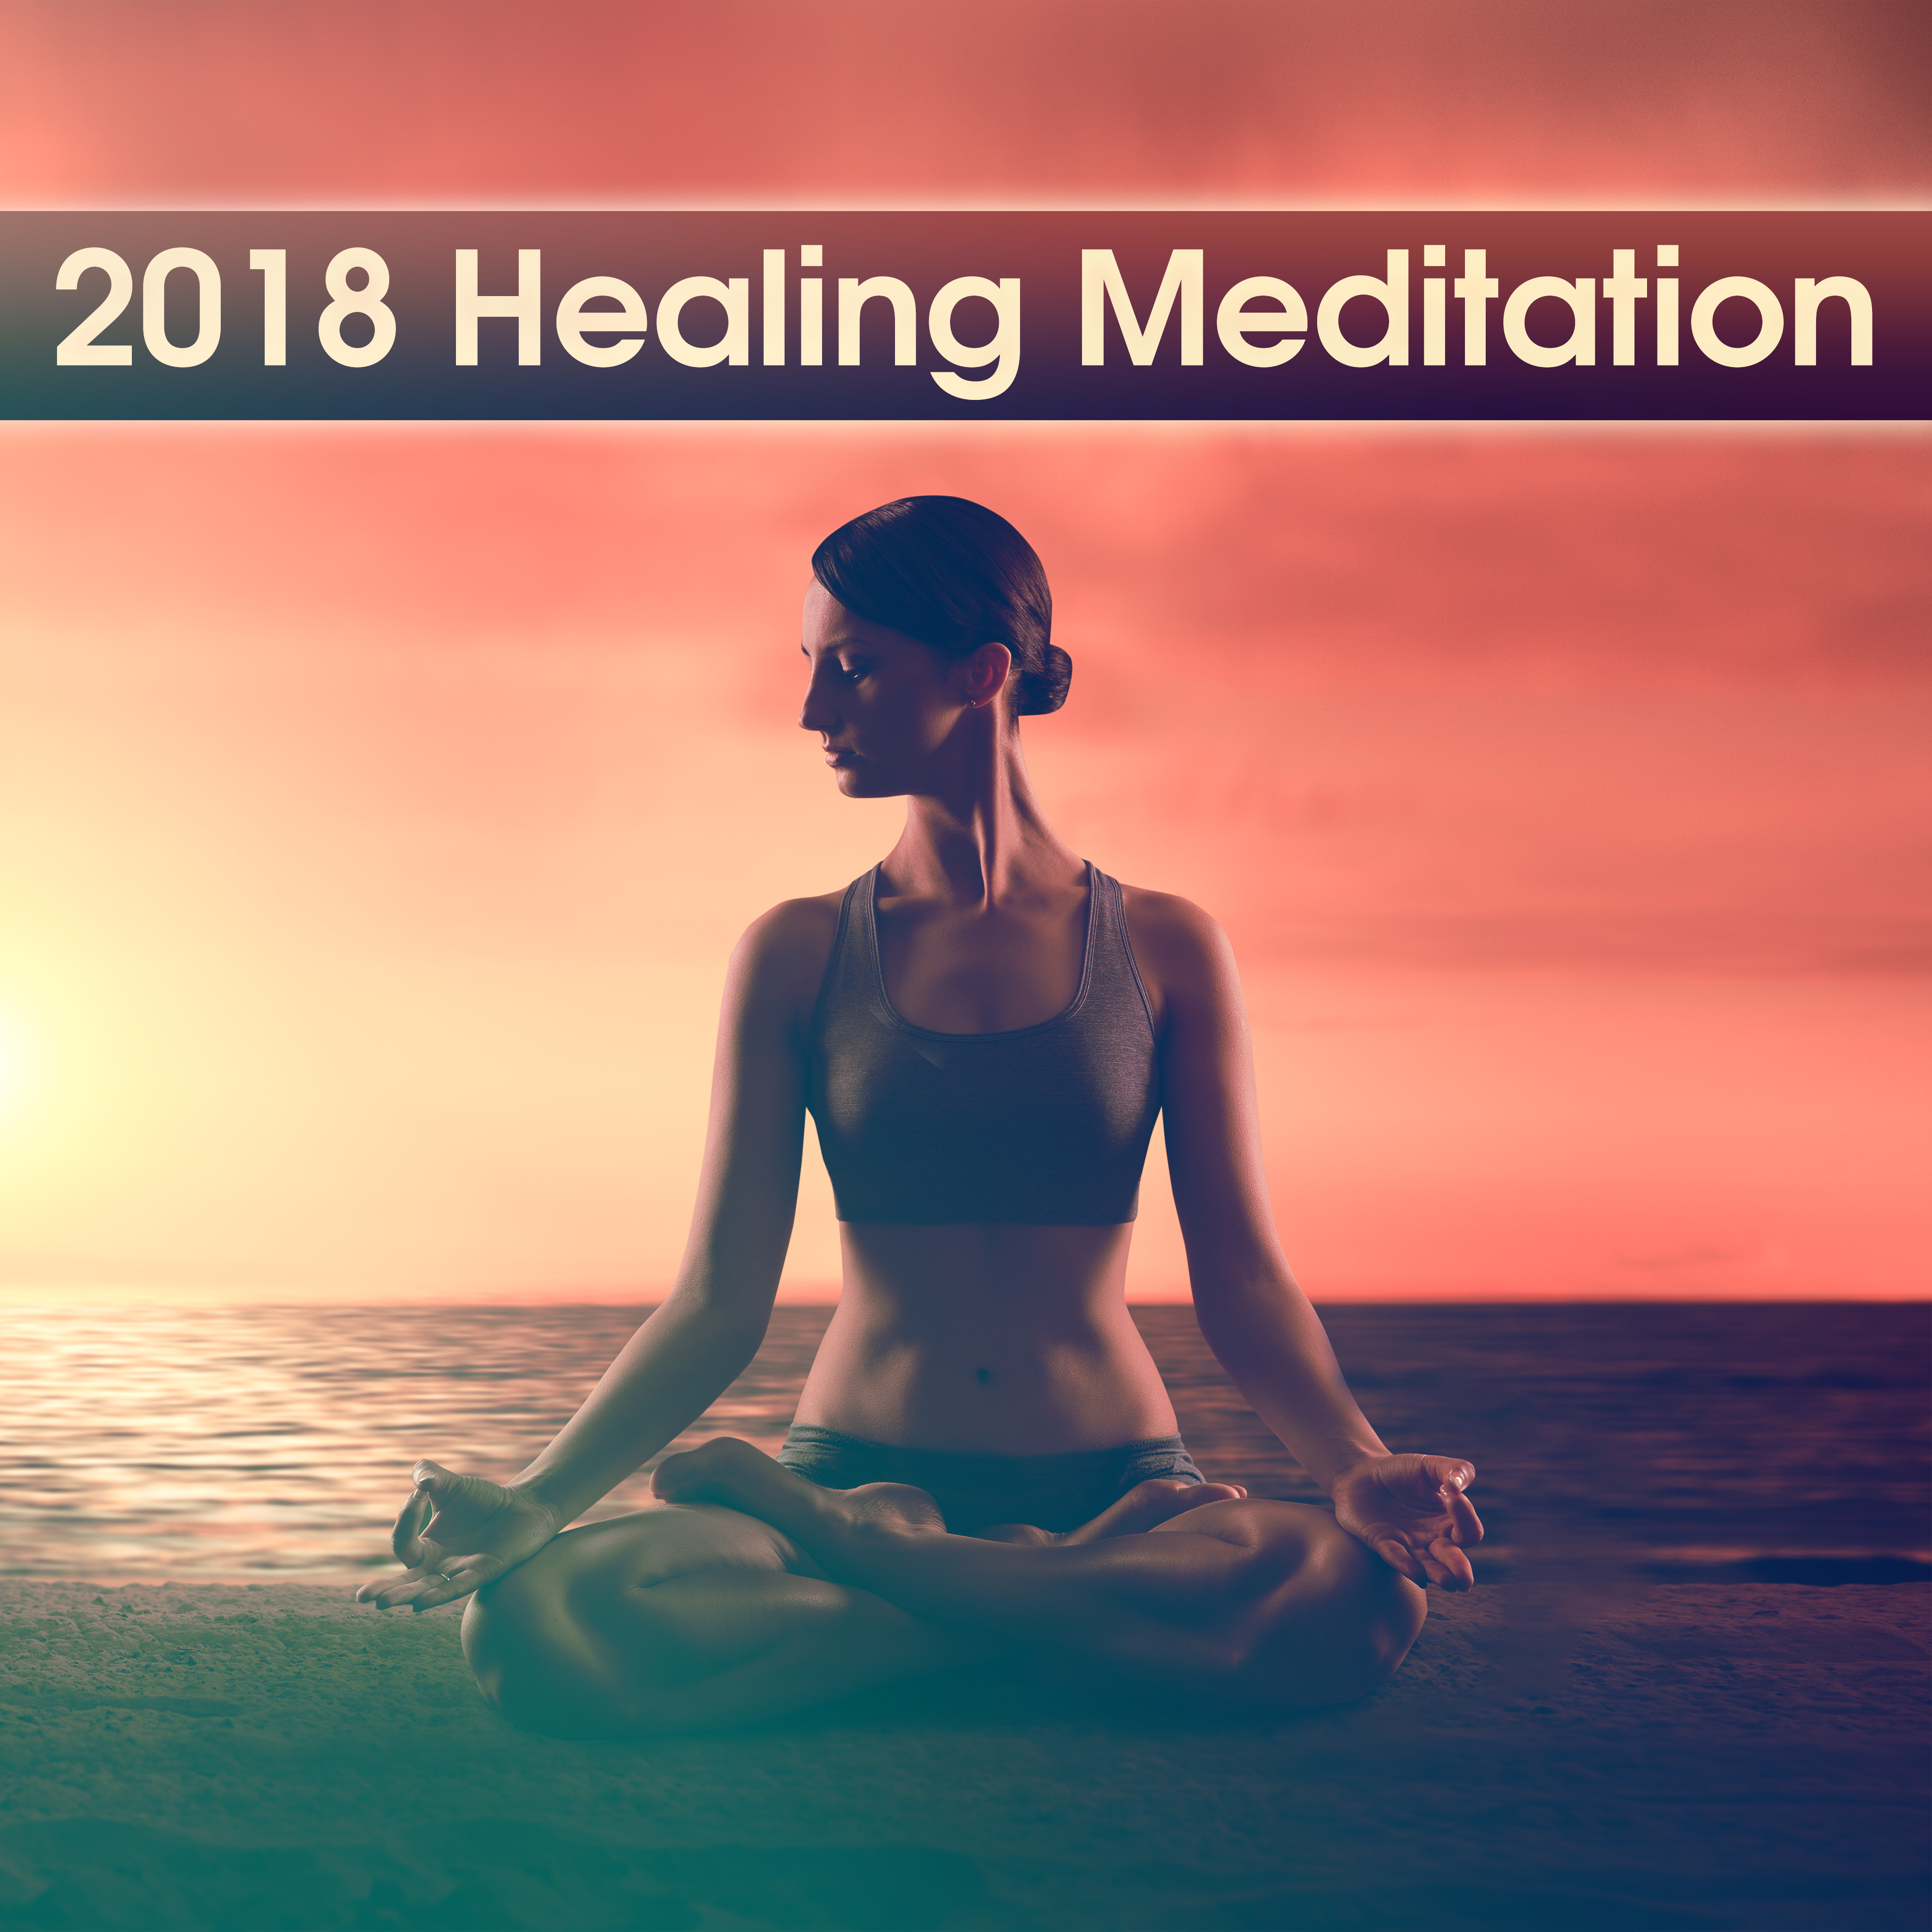 2018 Healing Meditation